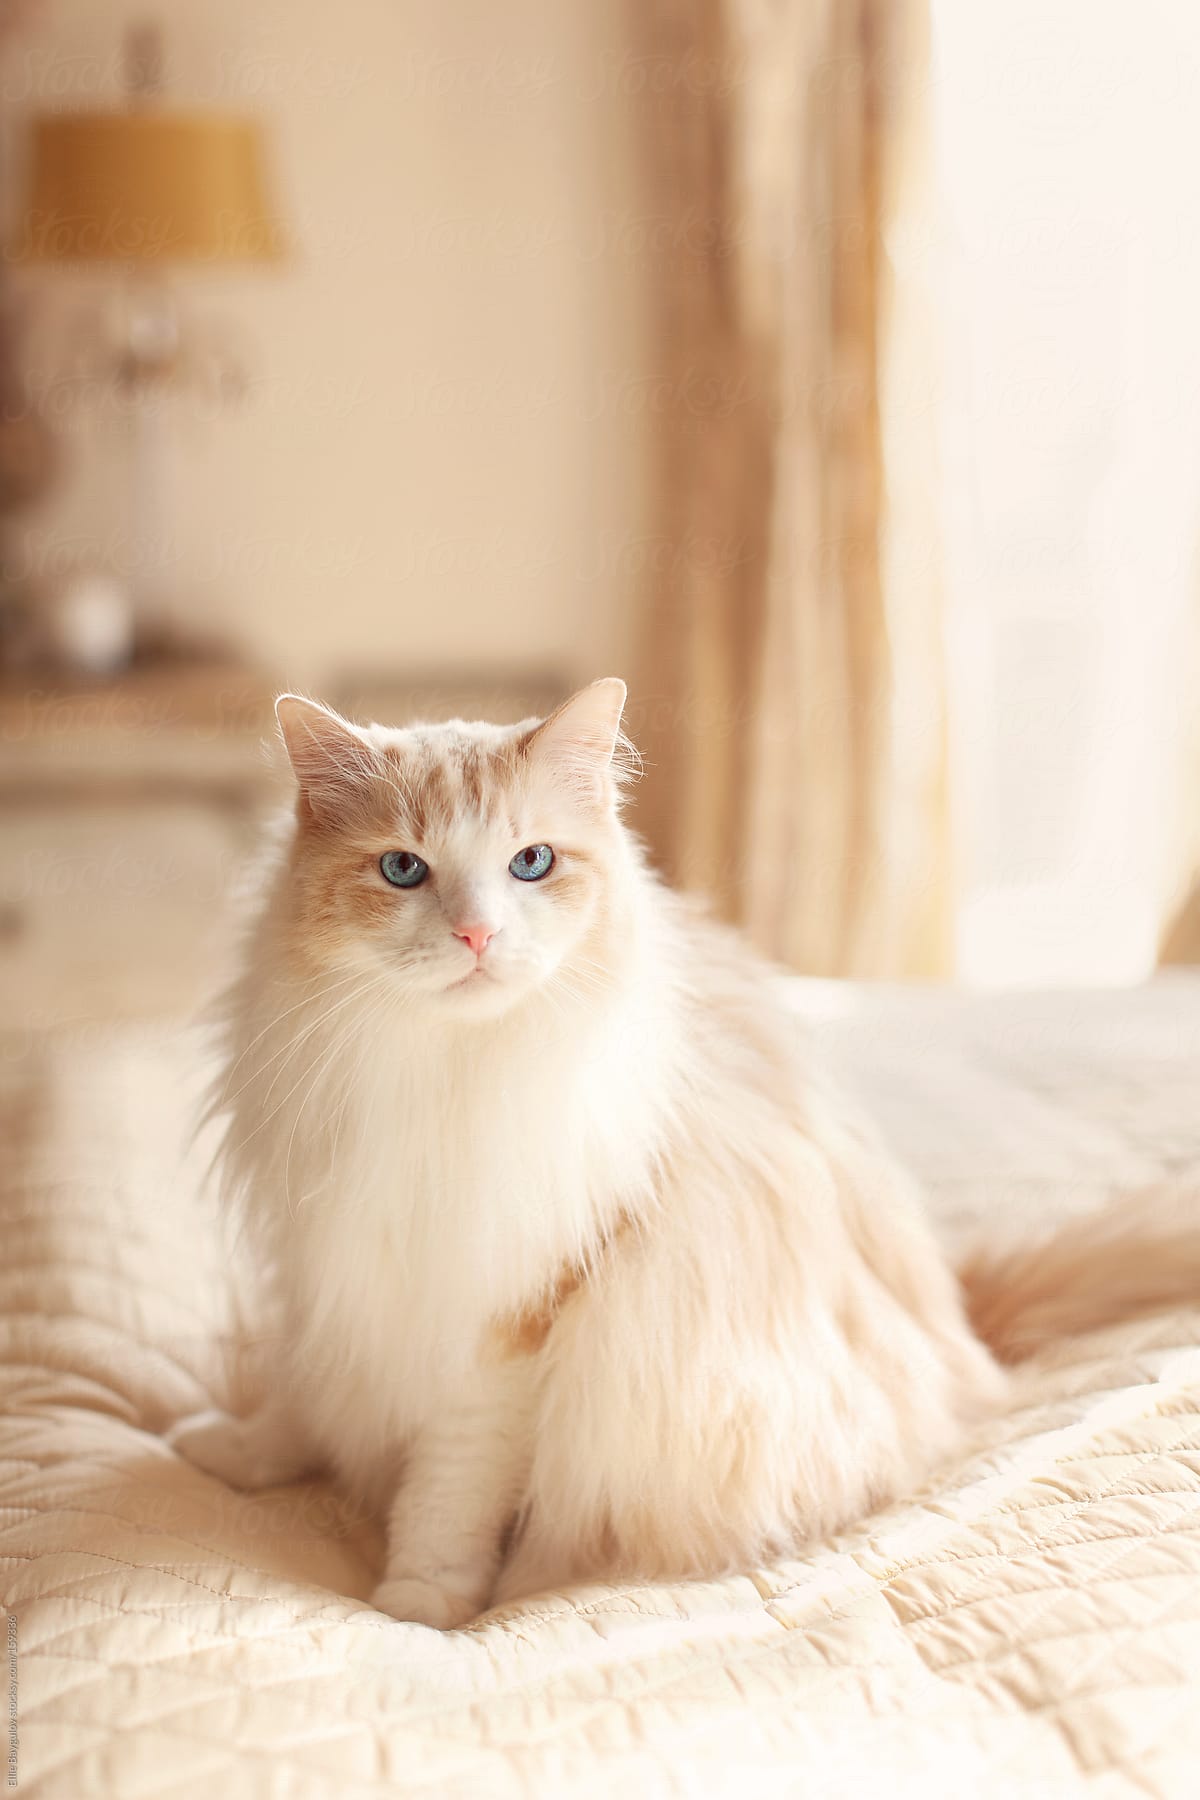 Fluffy Big Cat Sitting On A Bed by Ellie Baygulov